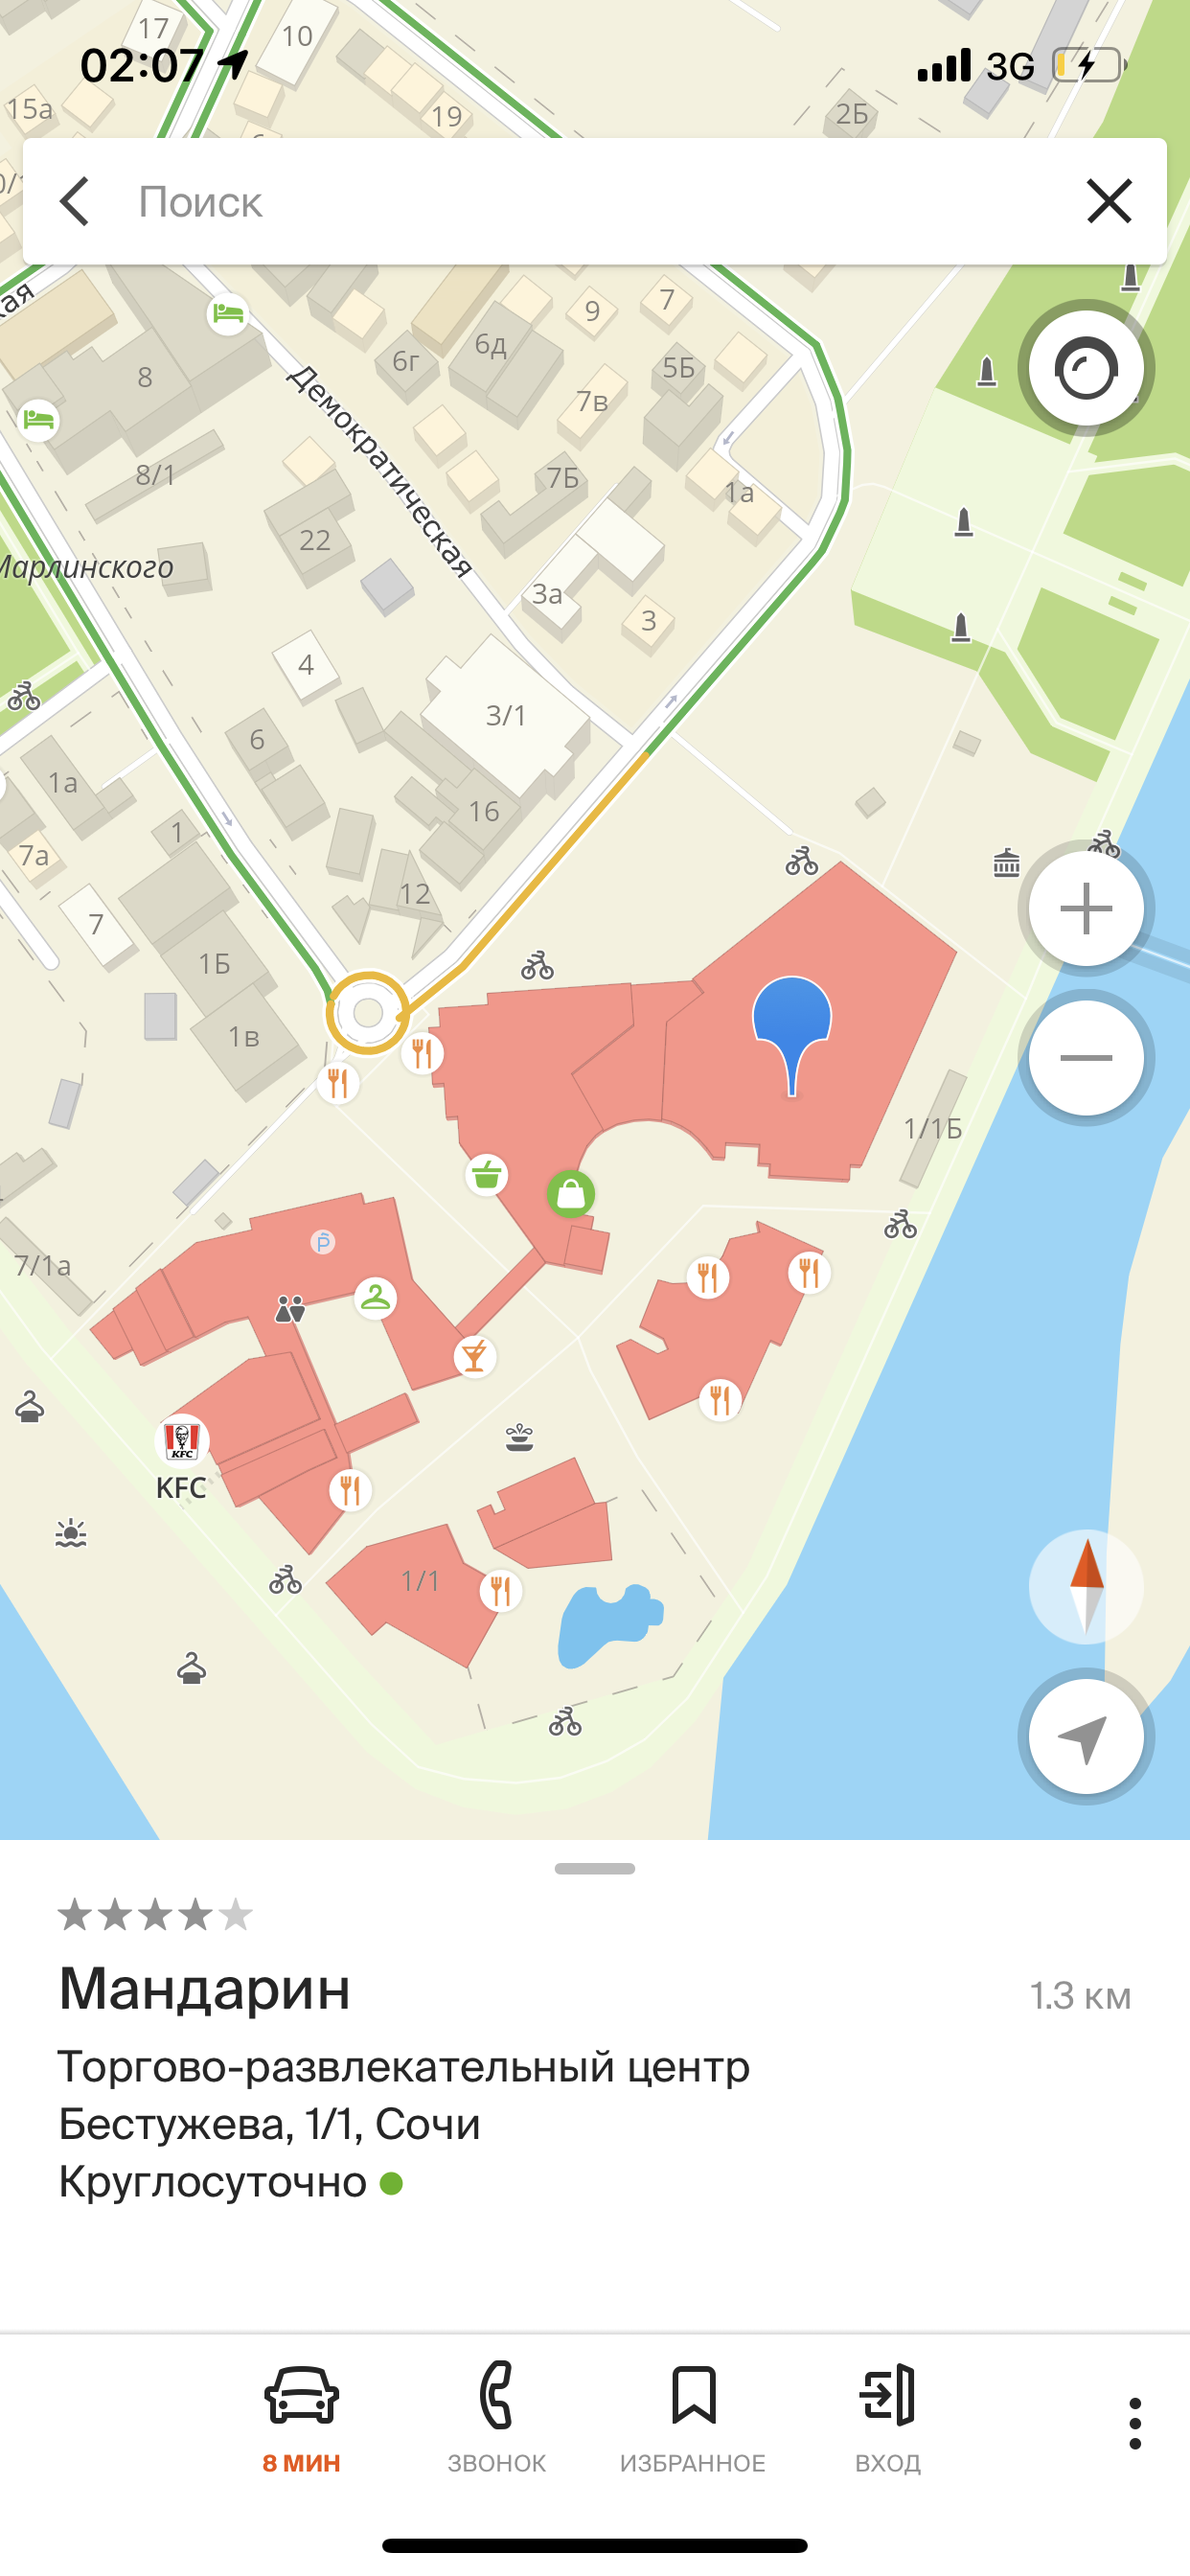 Как изменить расположение ТРЦ на карте - Форум – Google Карты